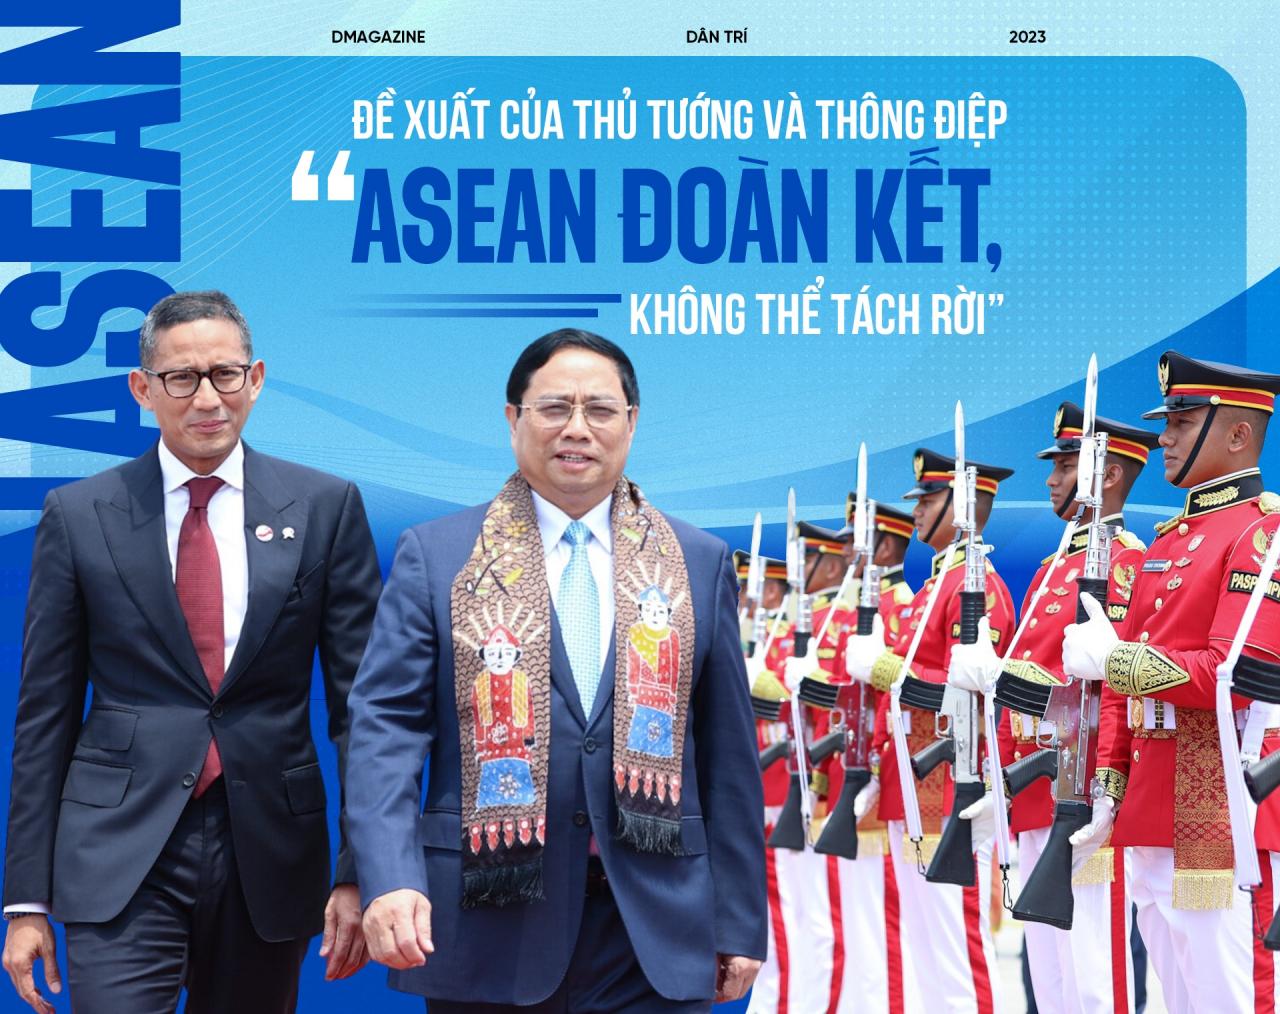 Đề xuất của Thủ tướng và thông điệp "ASEAN đoàn kết, không thể tách rời"